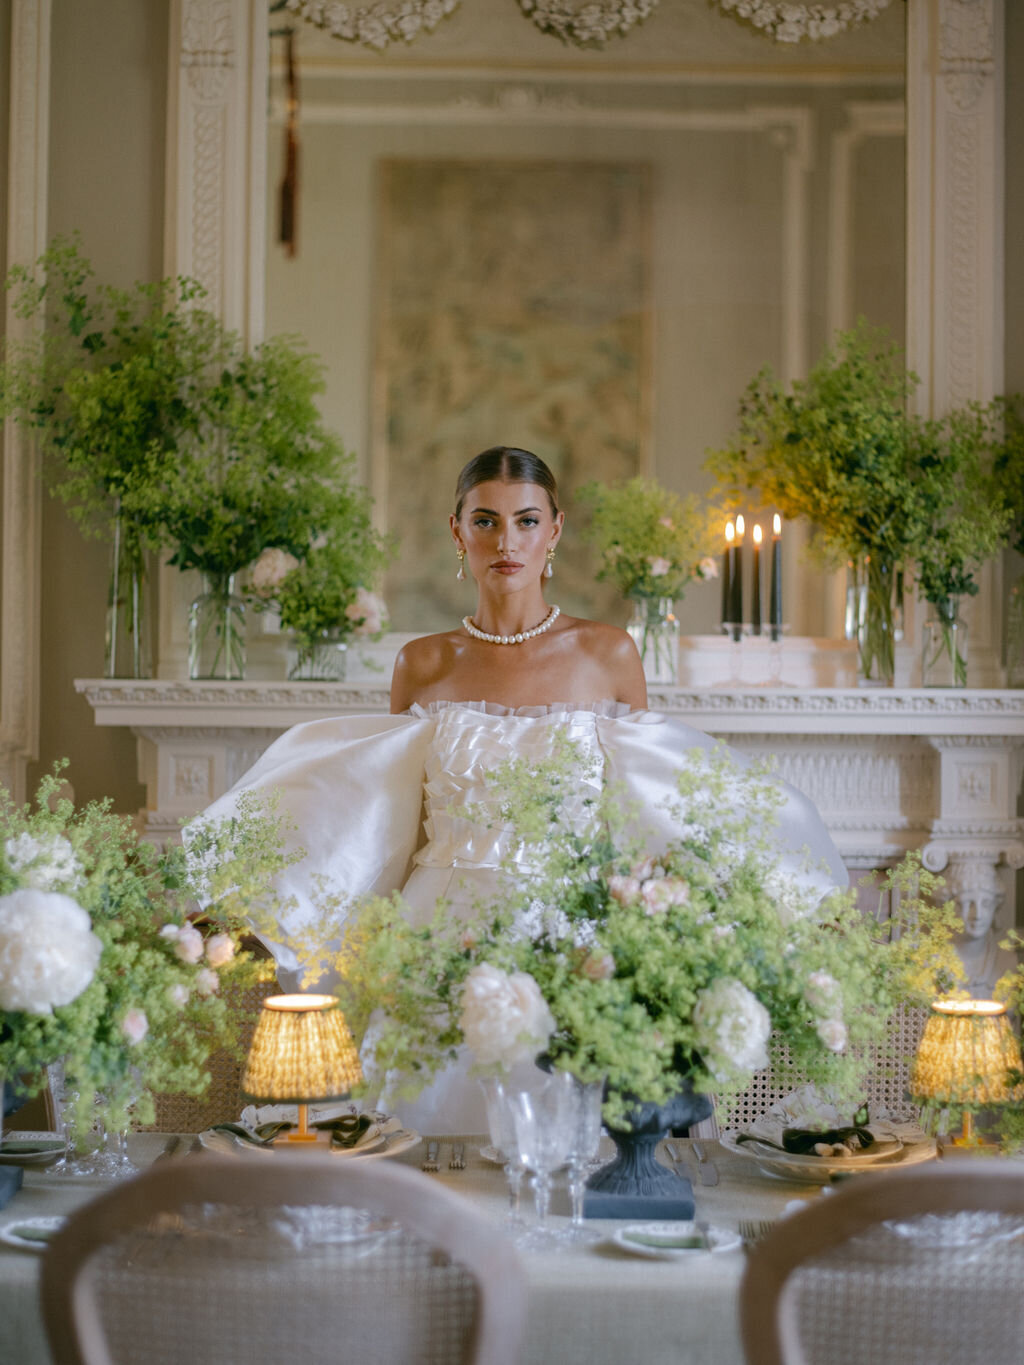 Attabara Studio UK Luxury Wedding Planners  with Katie Julia-IconicEditorial-OakleyCourt-394